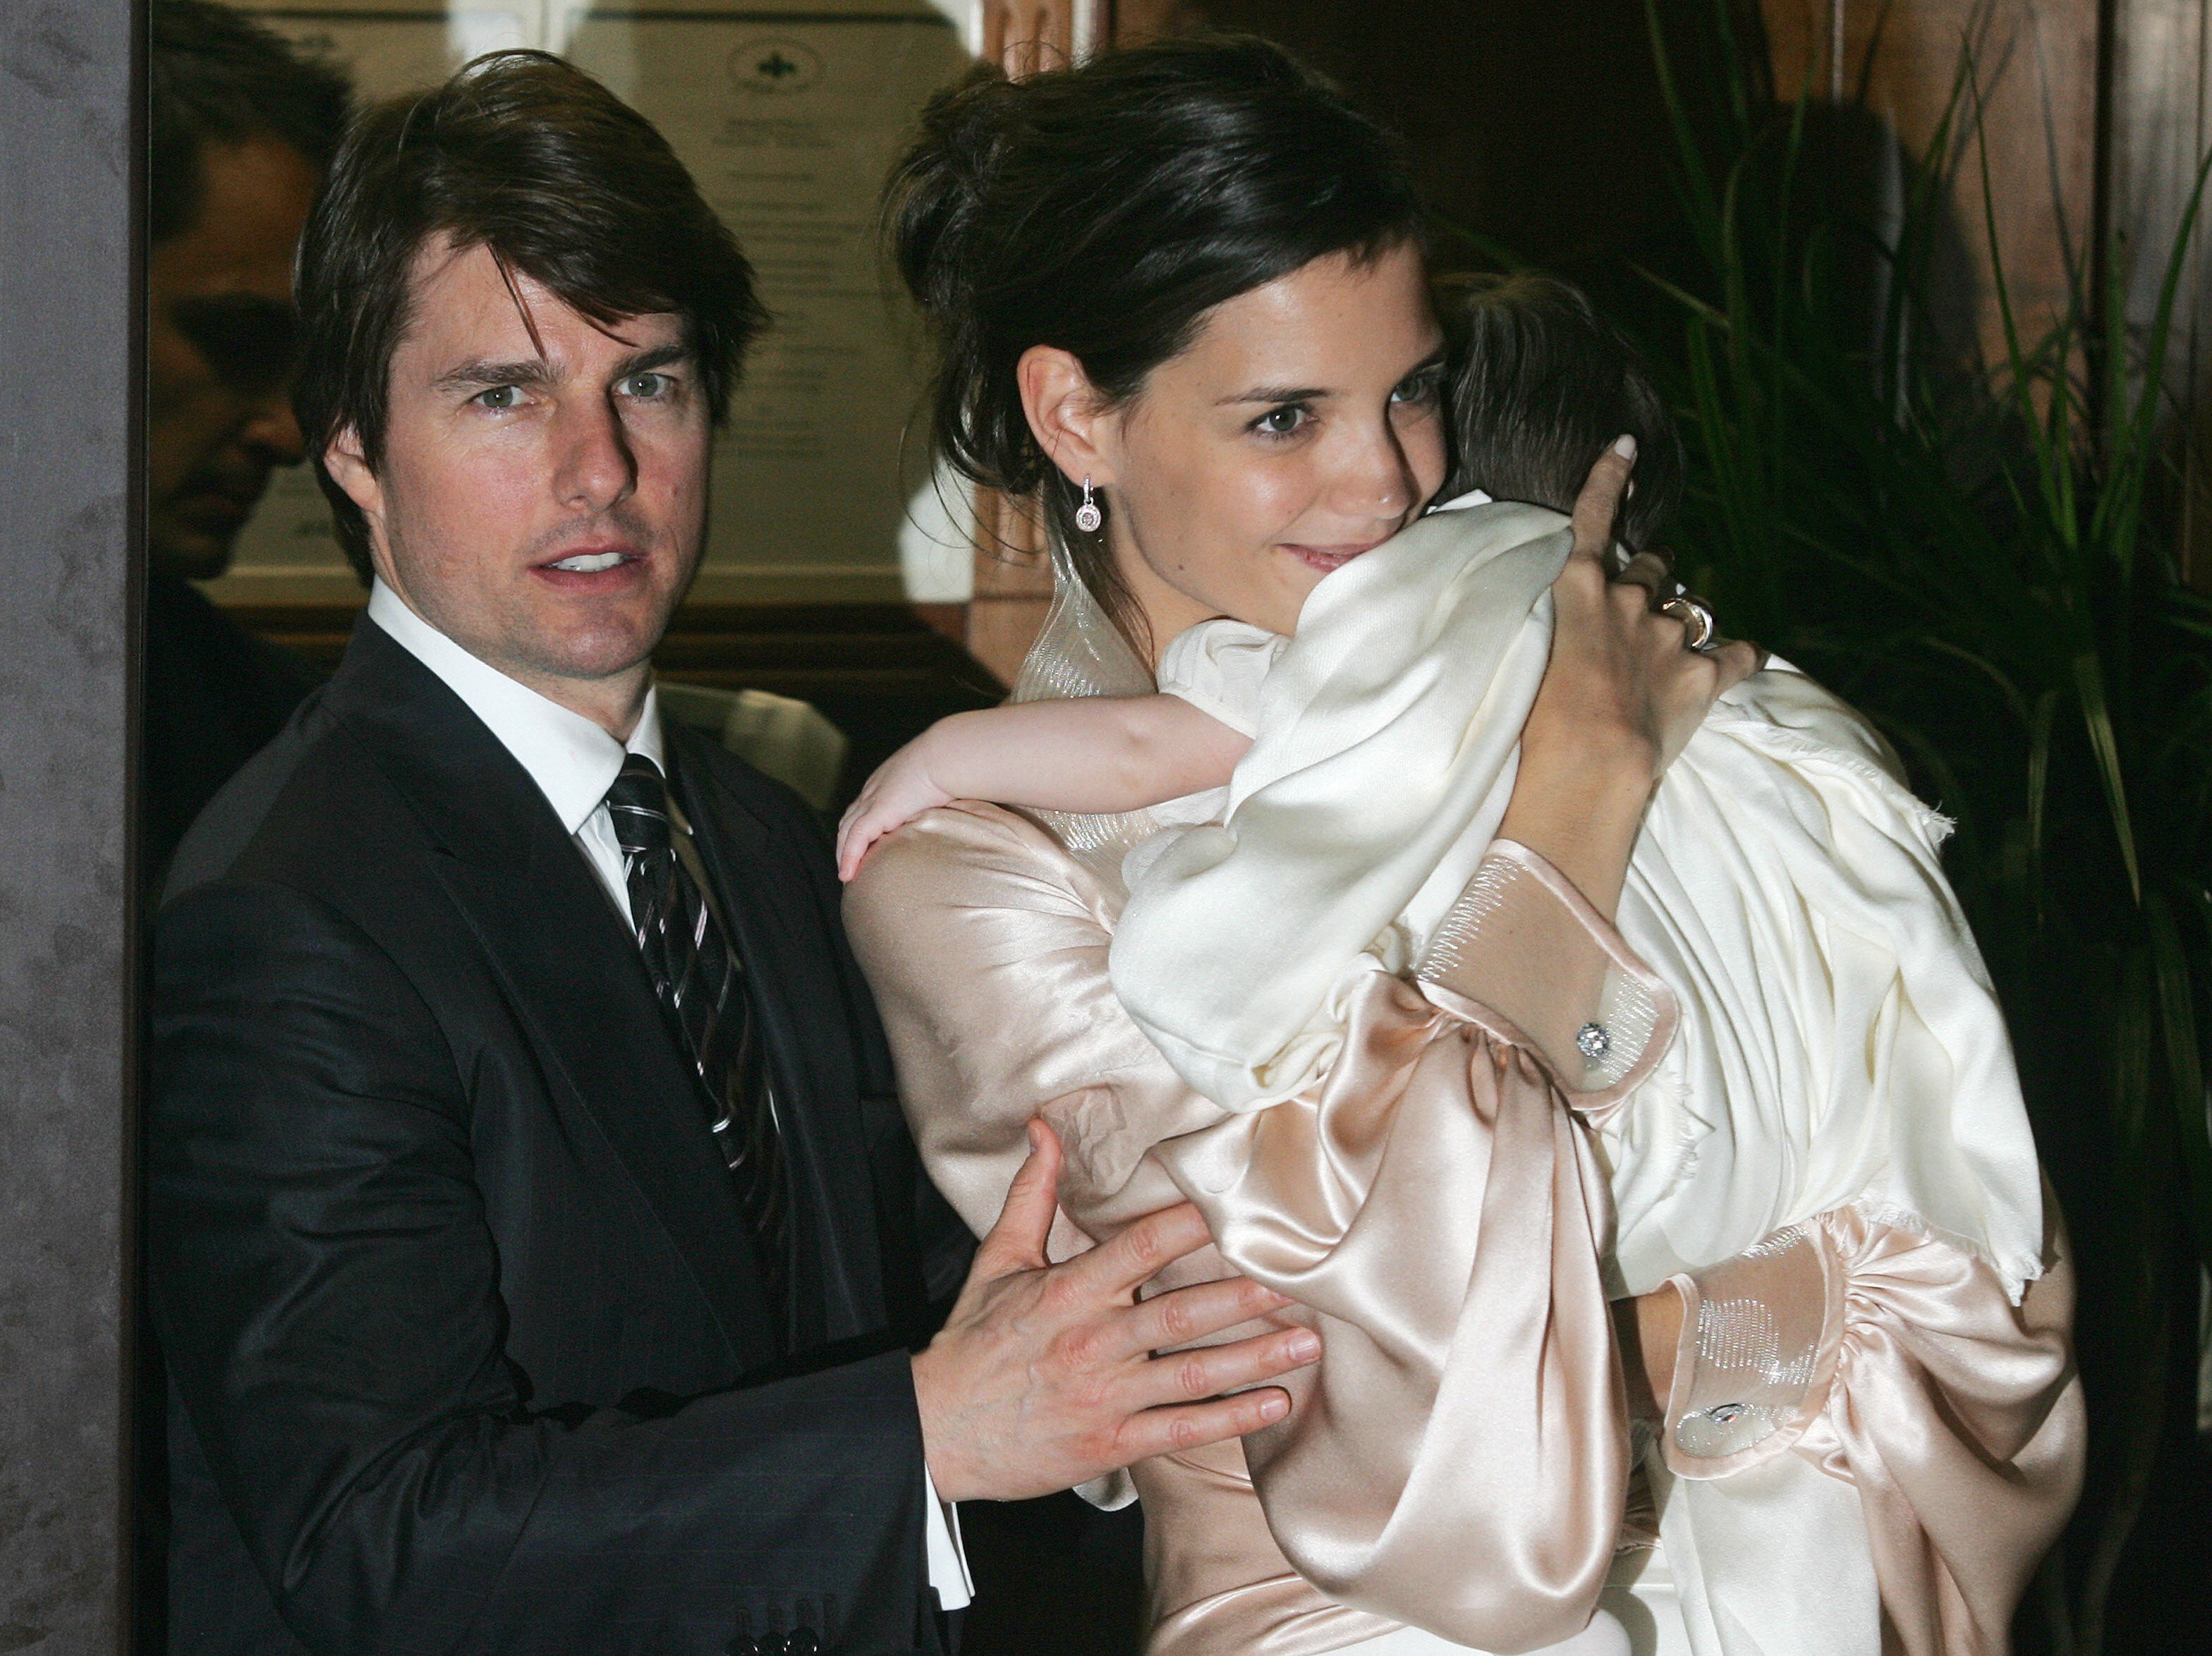 Tom Cruise y Katie Holmes, con su hija Suri en brazos, saliendo de un restaurante, el 17 de noviembre de 2006, en Roma, Italia. | Foto: Getty Images